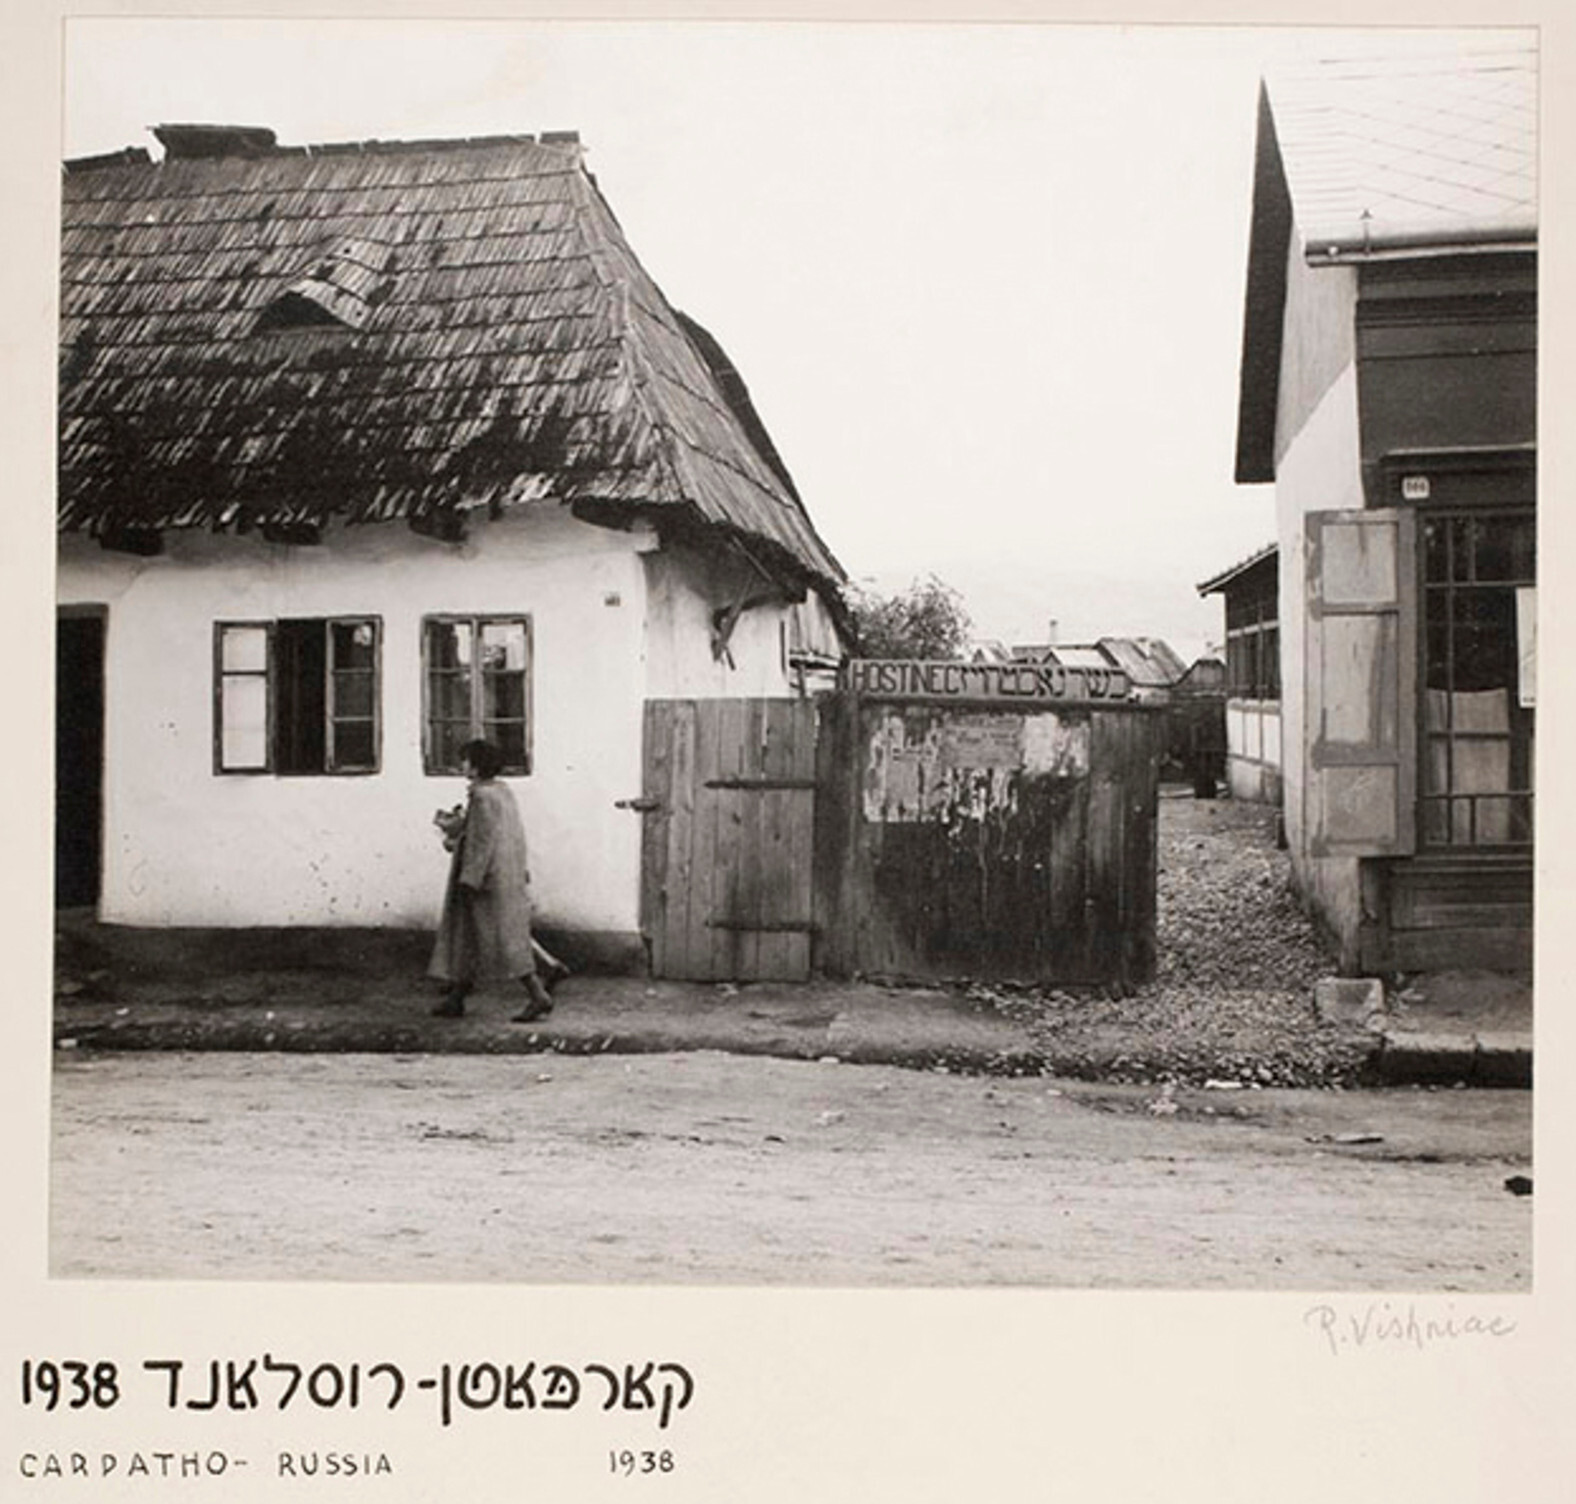 Вход в кошерный отель, Карпатская Русь, ок. 1935-38 гг. Фотограф Роман Вишняк